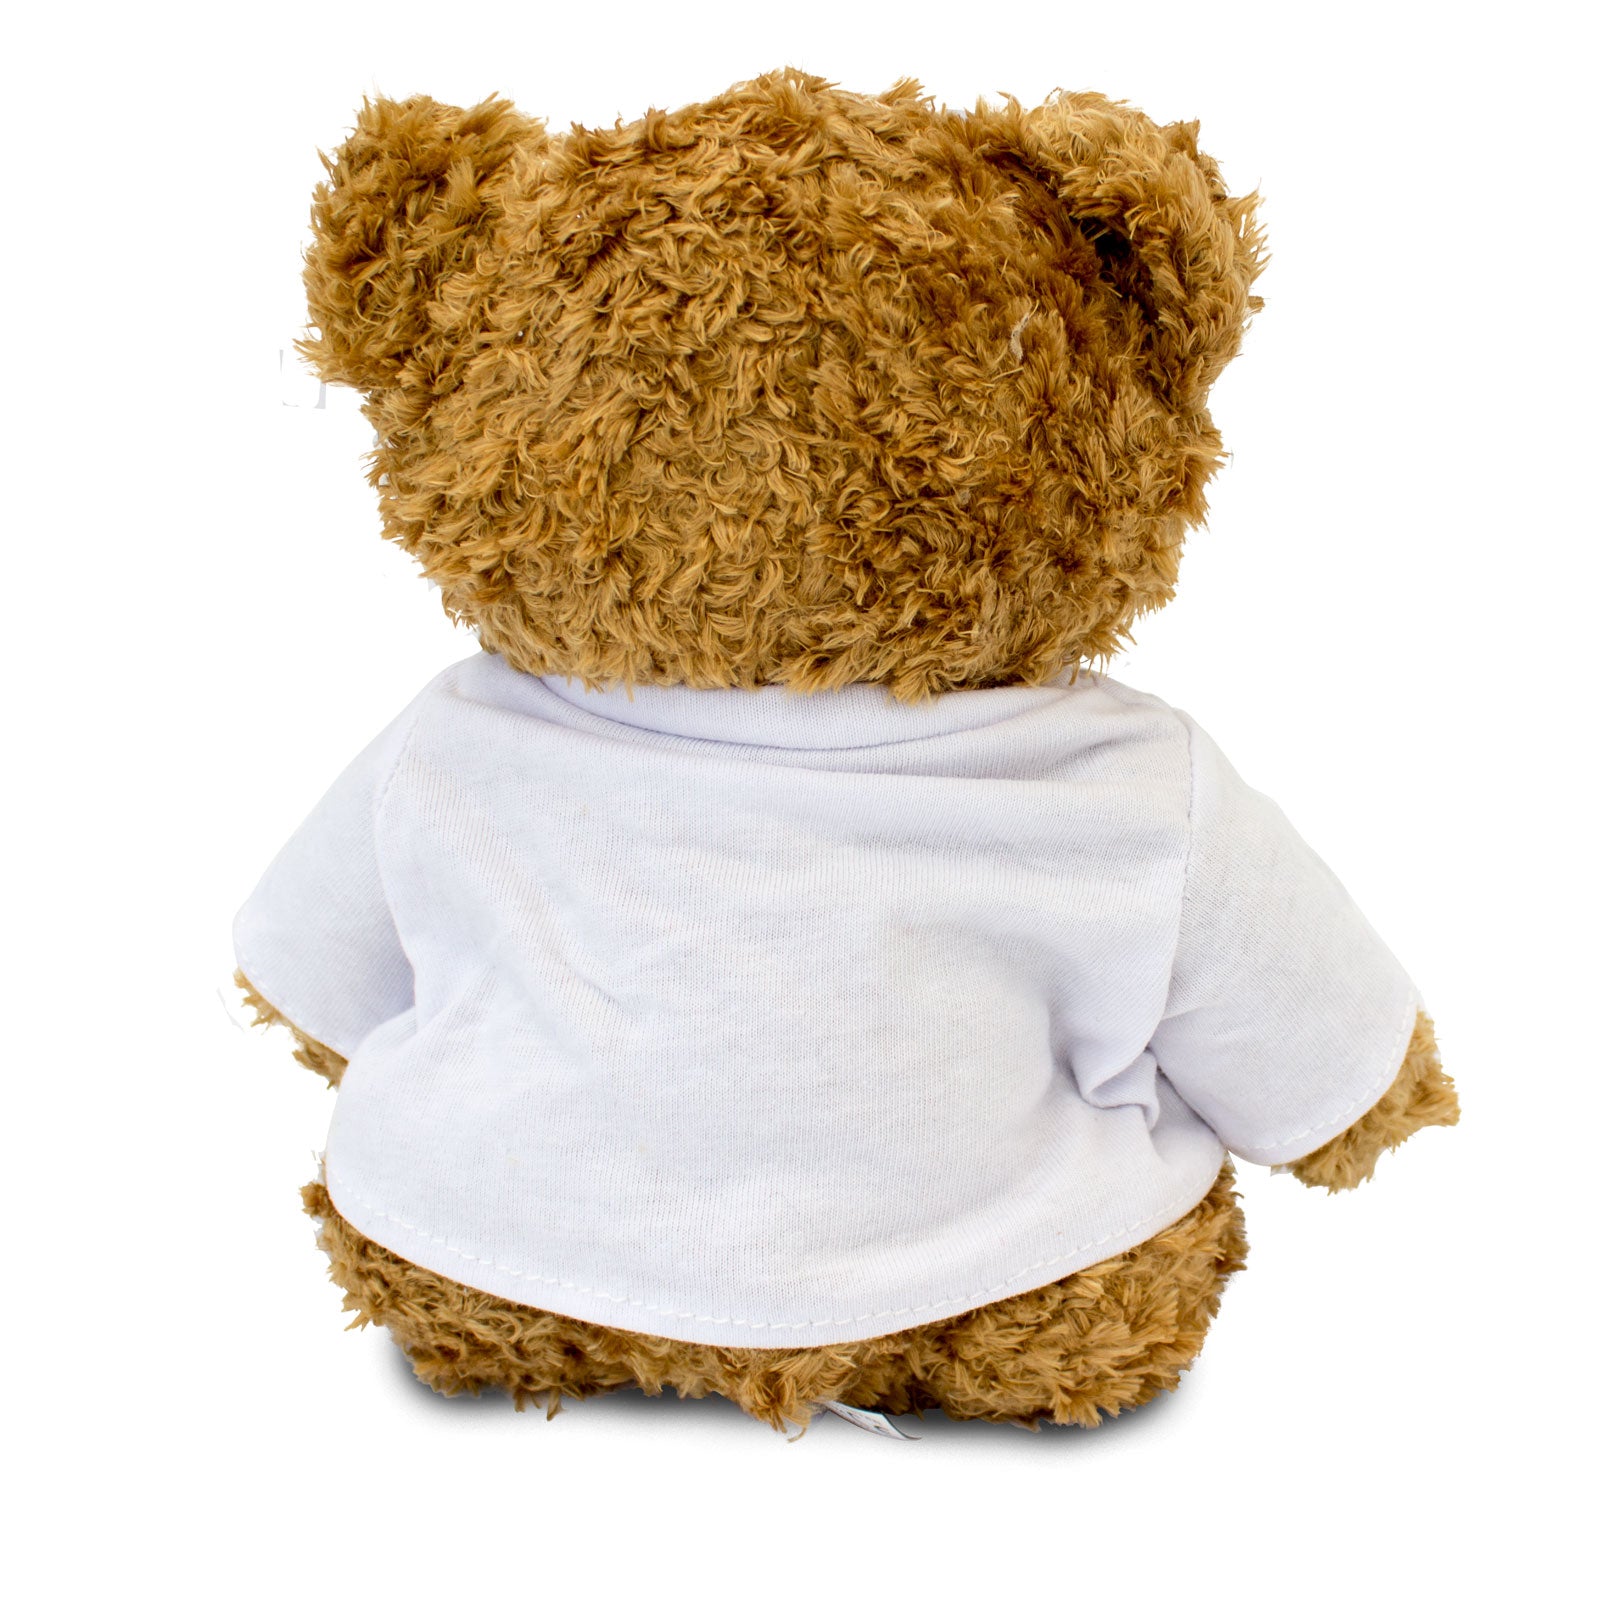 I Love Margaret - Teddy Bear